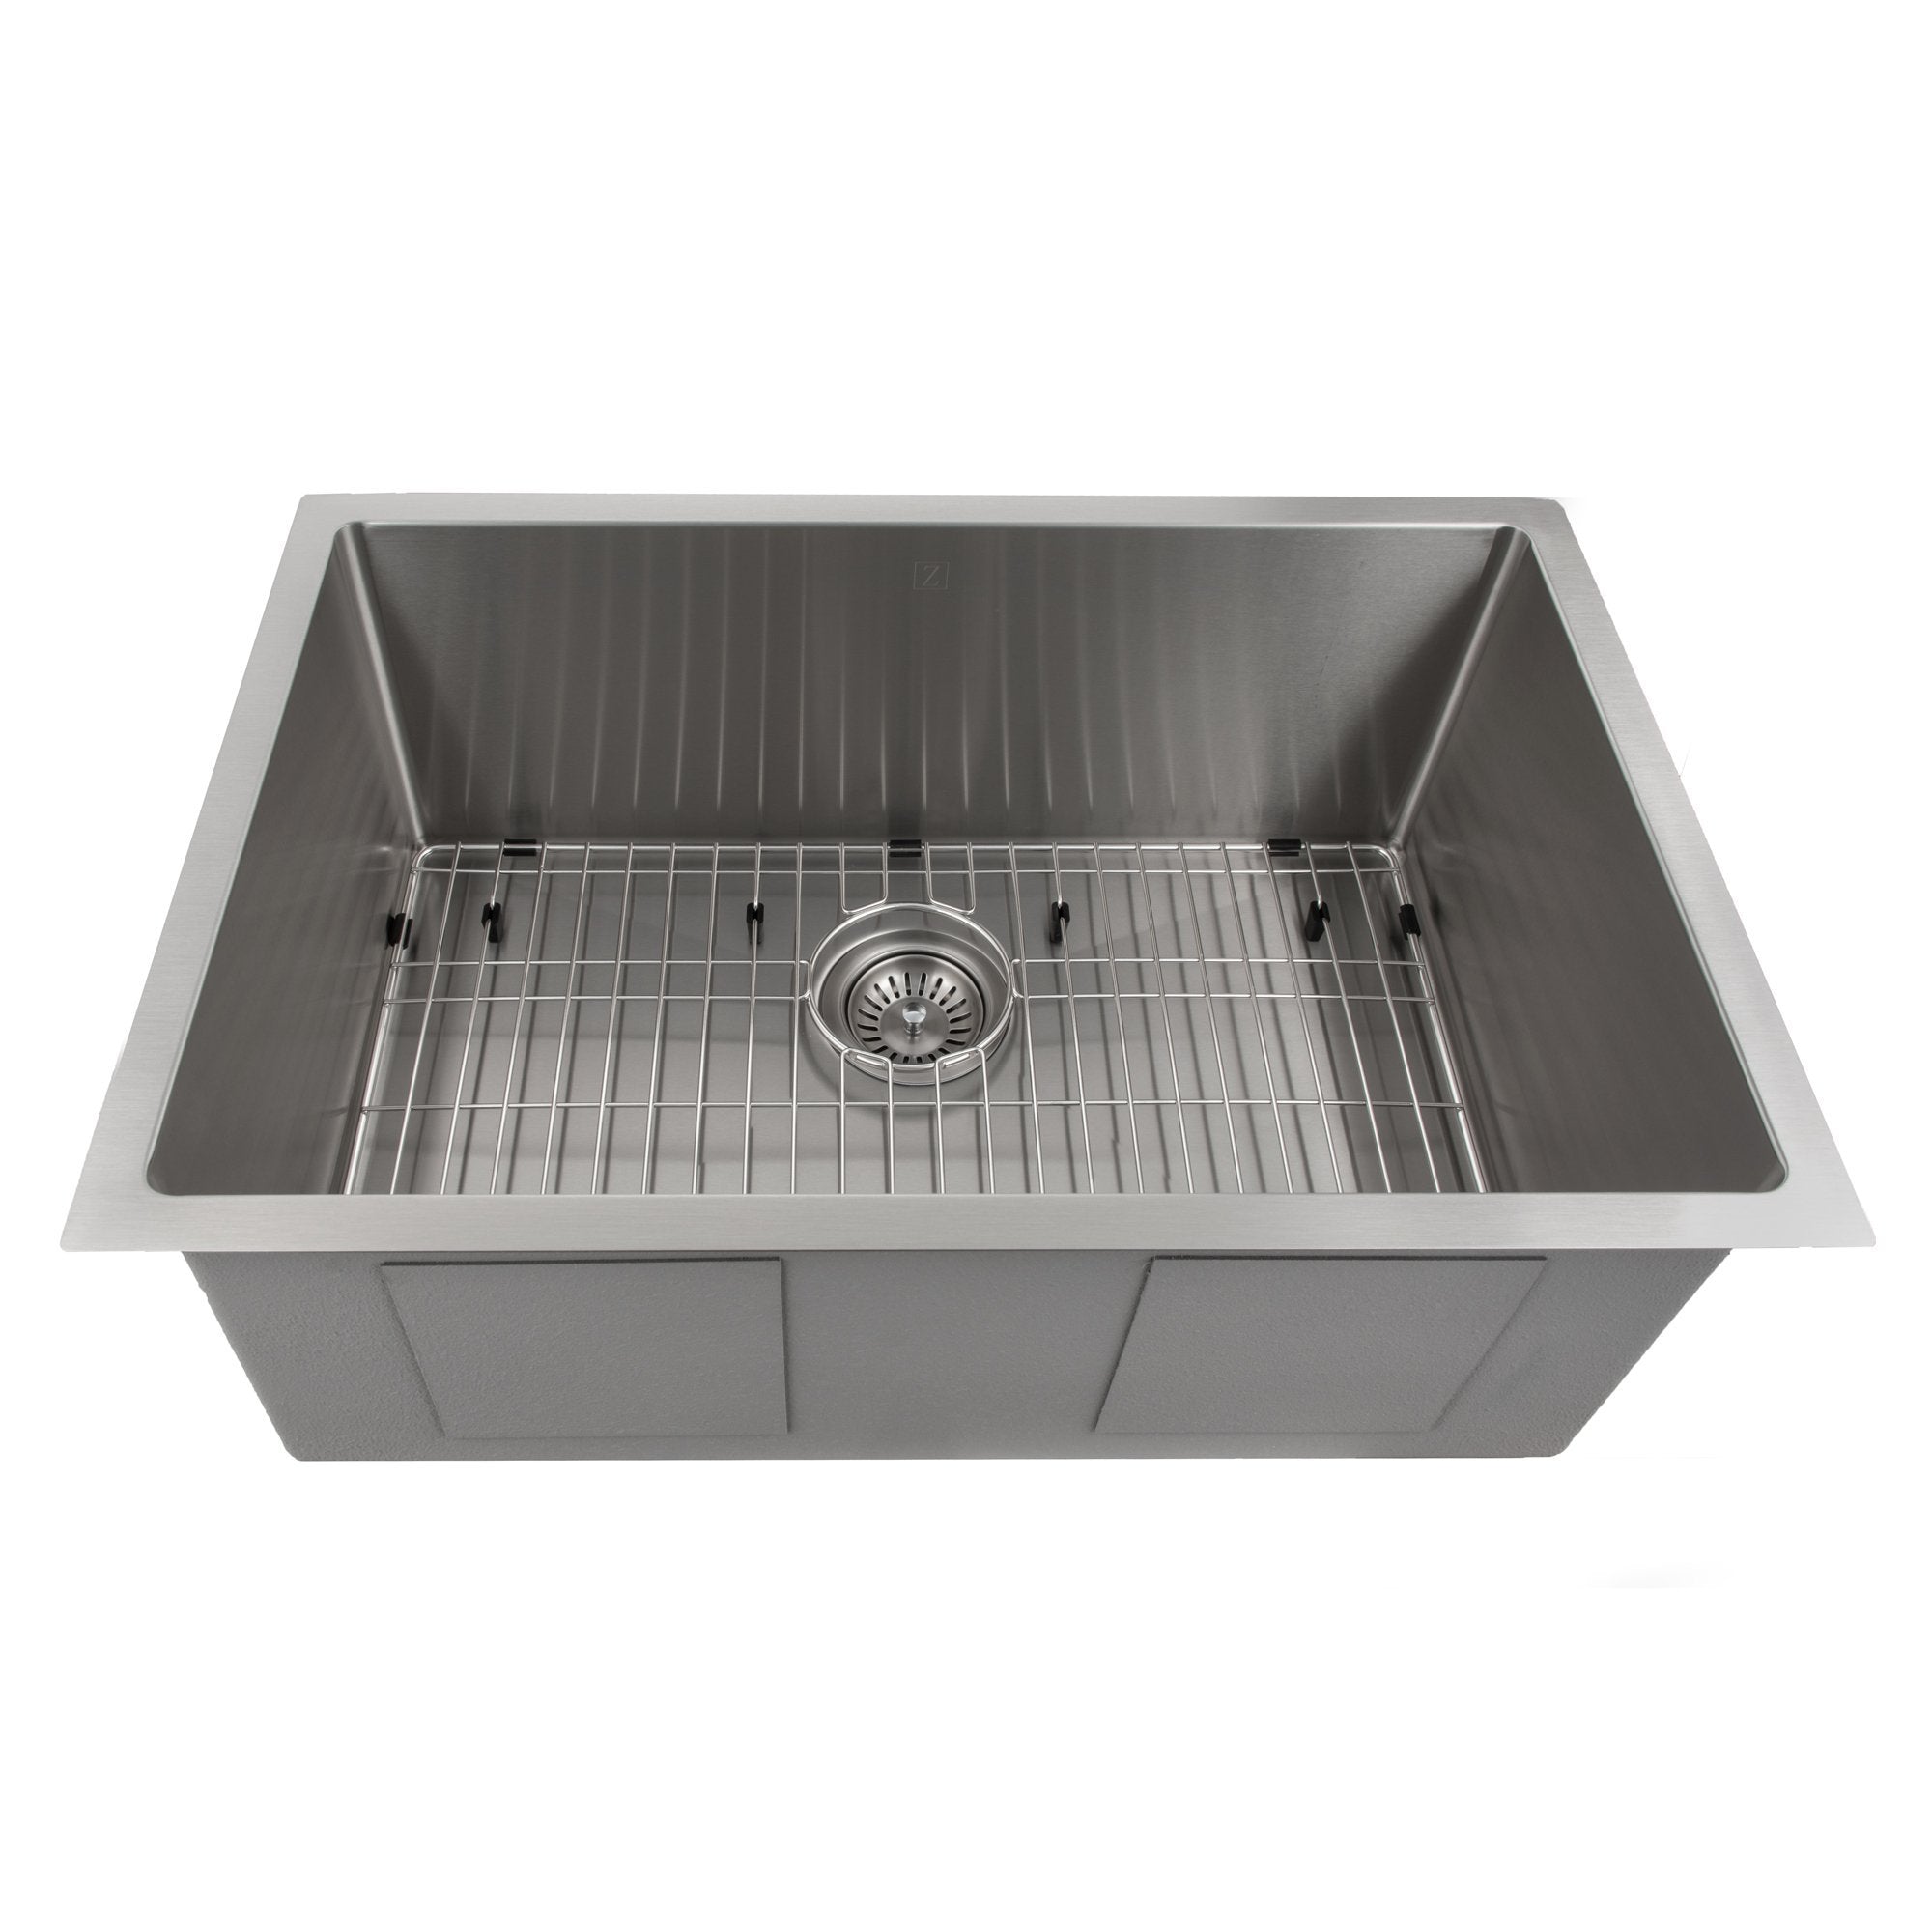 ZLINE 30" Classic Series Undermount Single Bowl Sink (SRS) - Rustic Kitchen & Bath - Sinks - ZLINE Kitchen and Bath